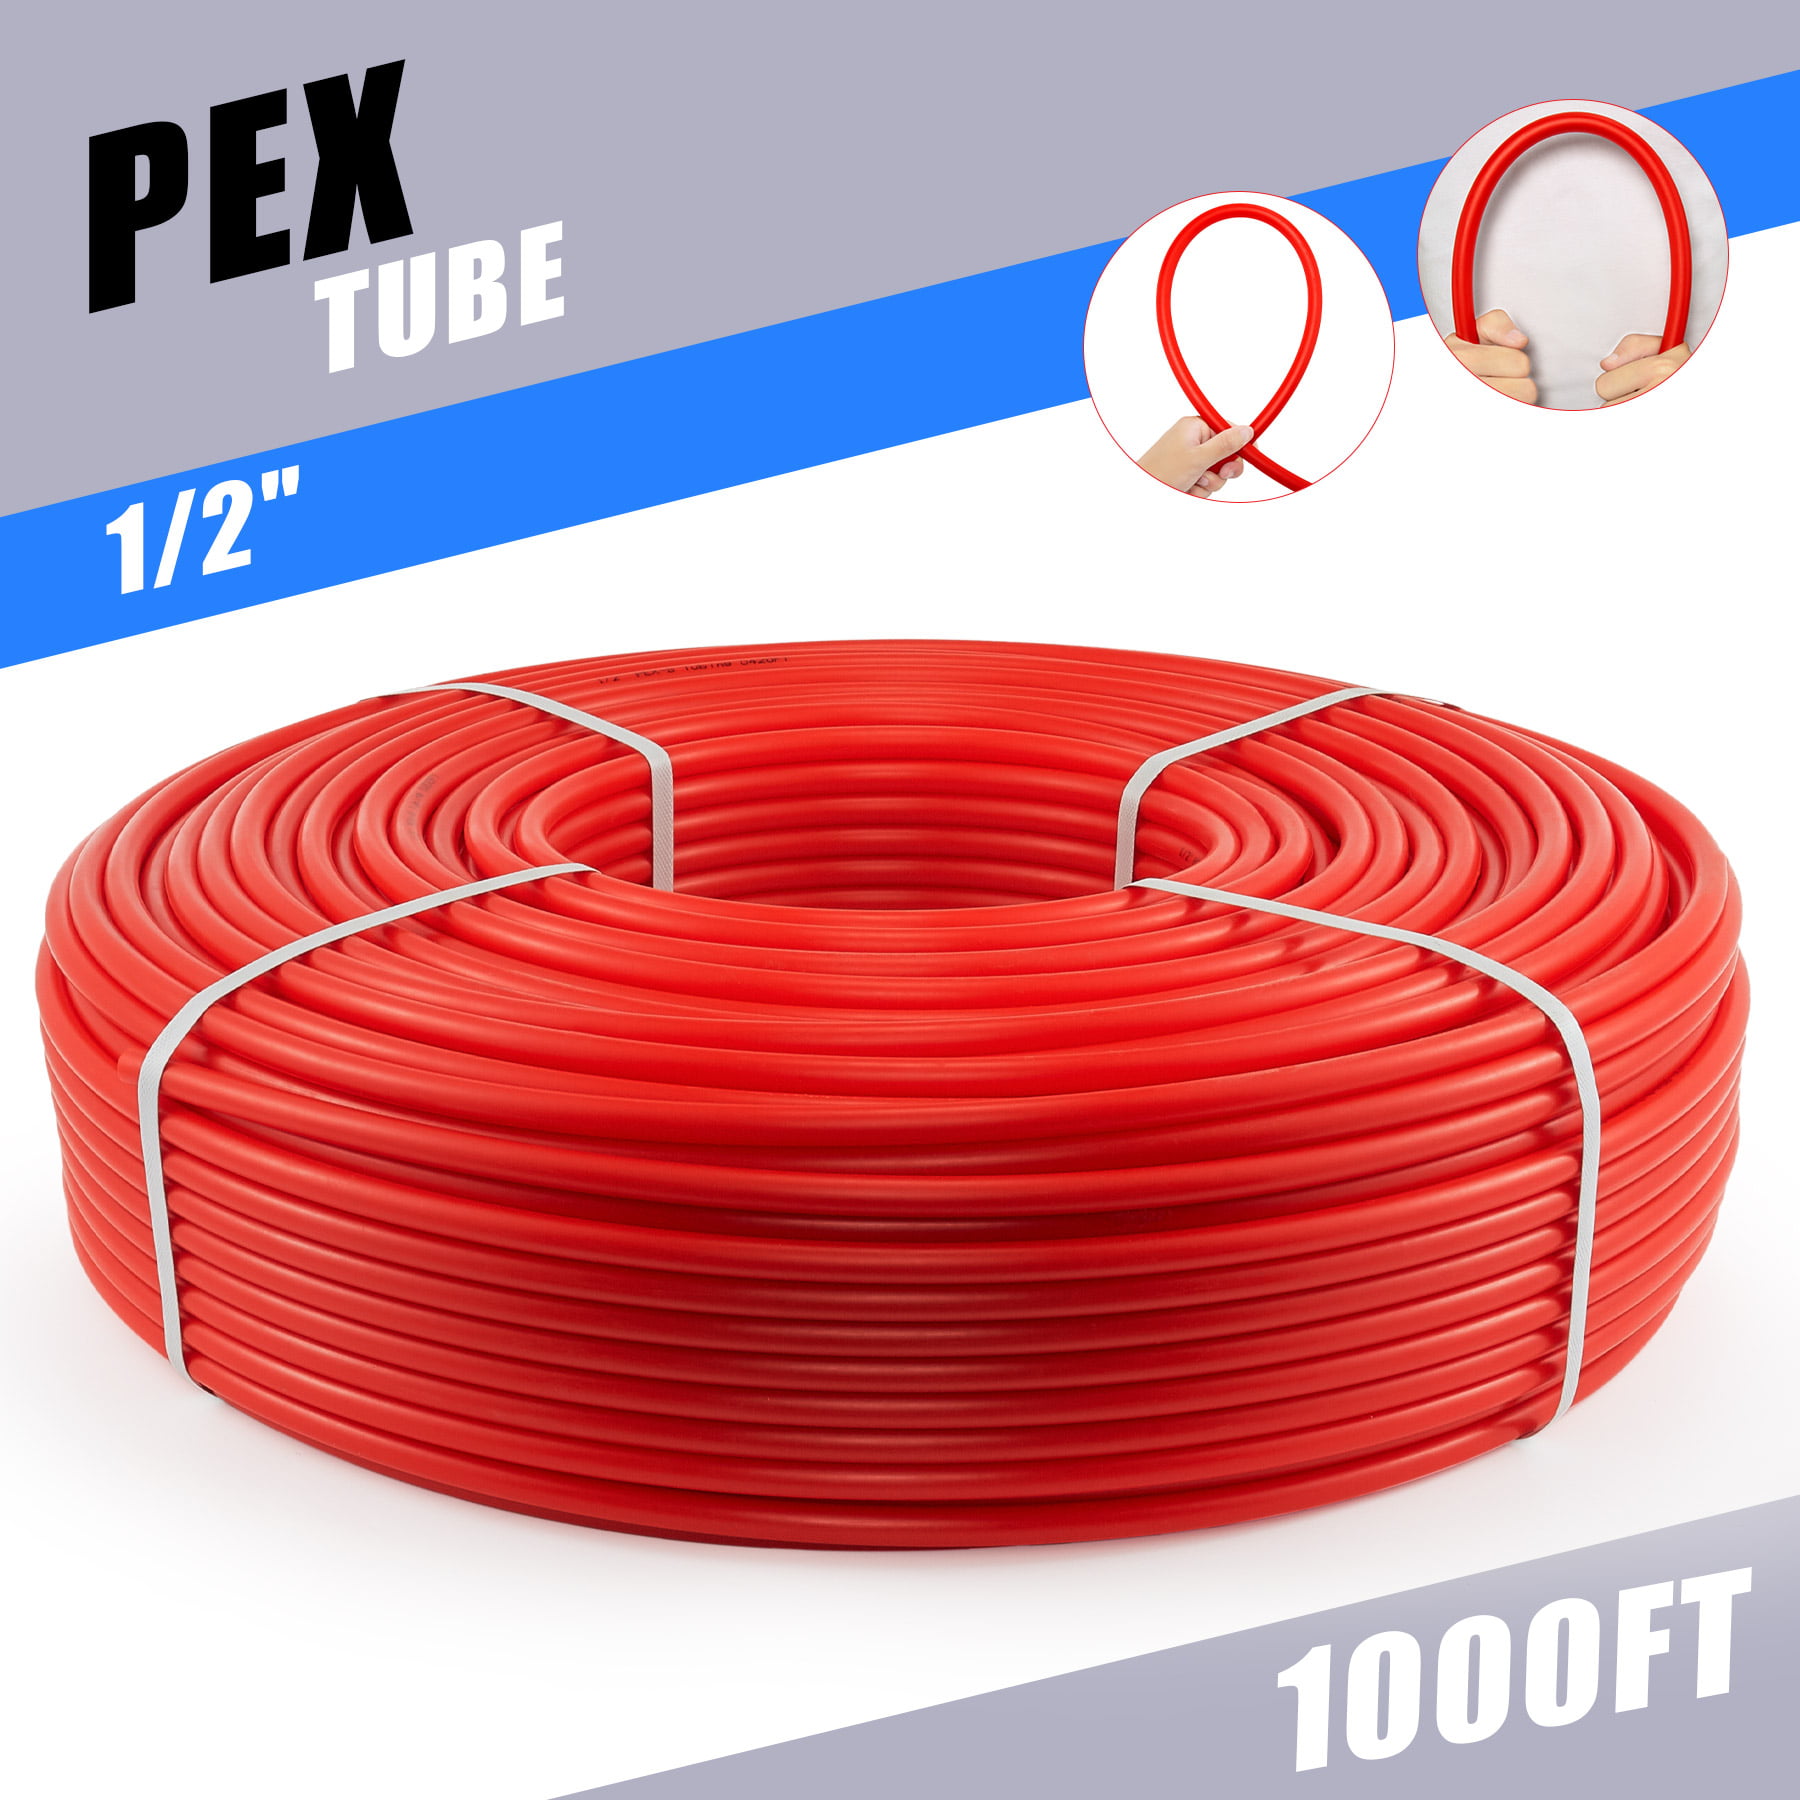 1/2in PEX Pipe PEX Tubing PEX Tube for Water Plumbing Floor Heating 1000ft PEX-B 